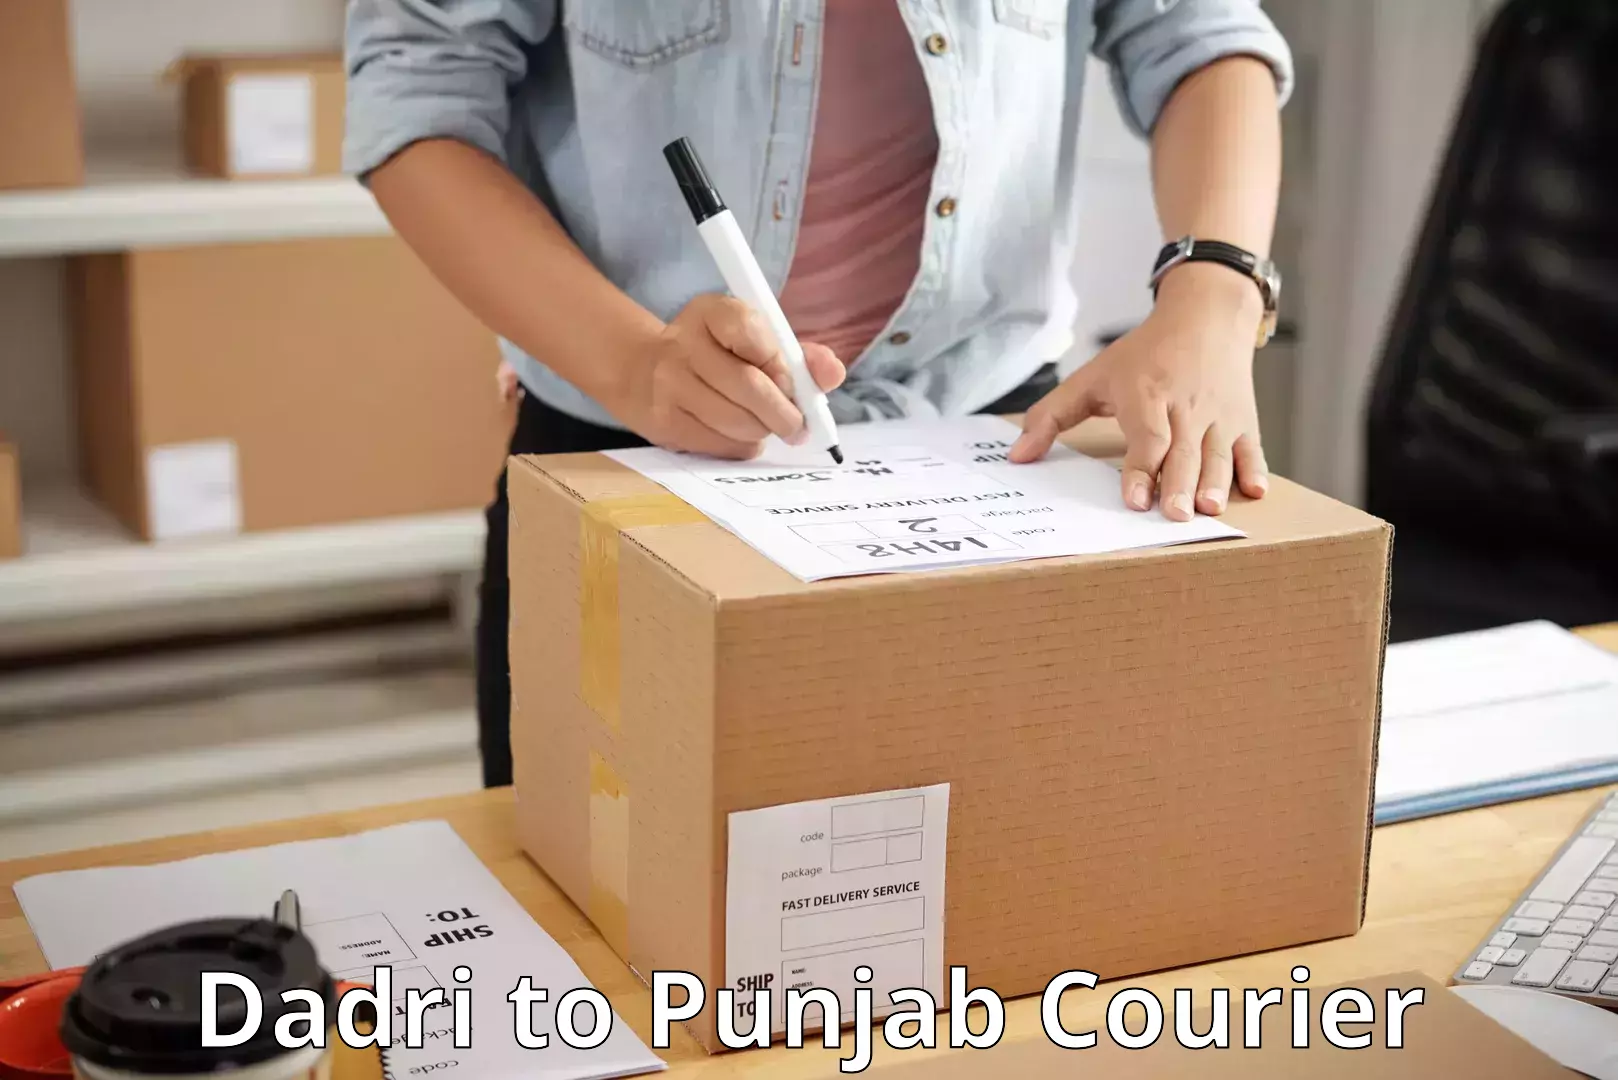 Individual parcel service Dadri to Punjab